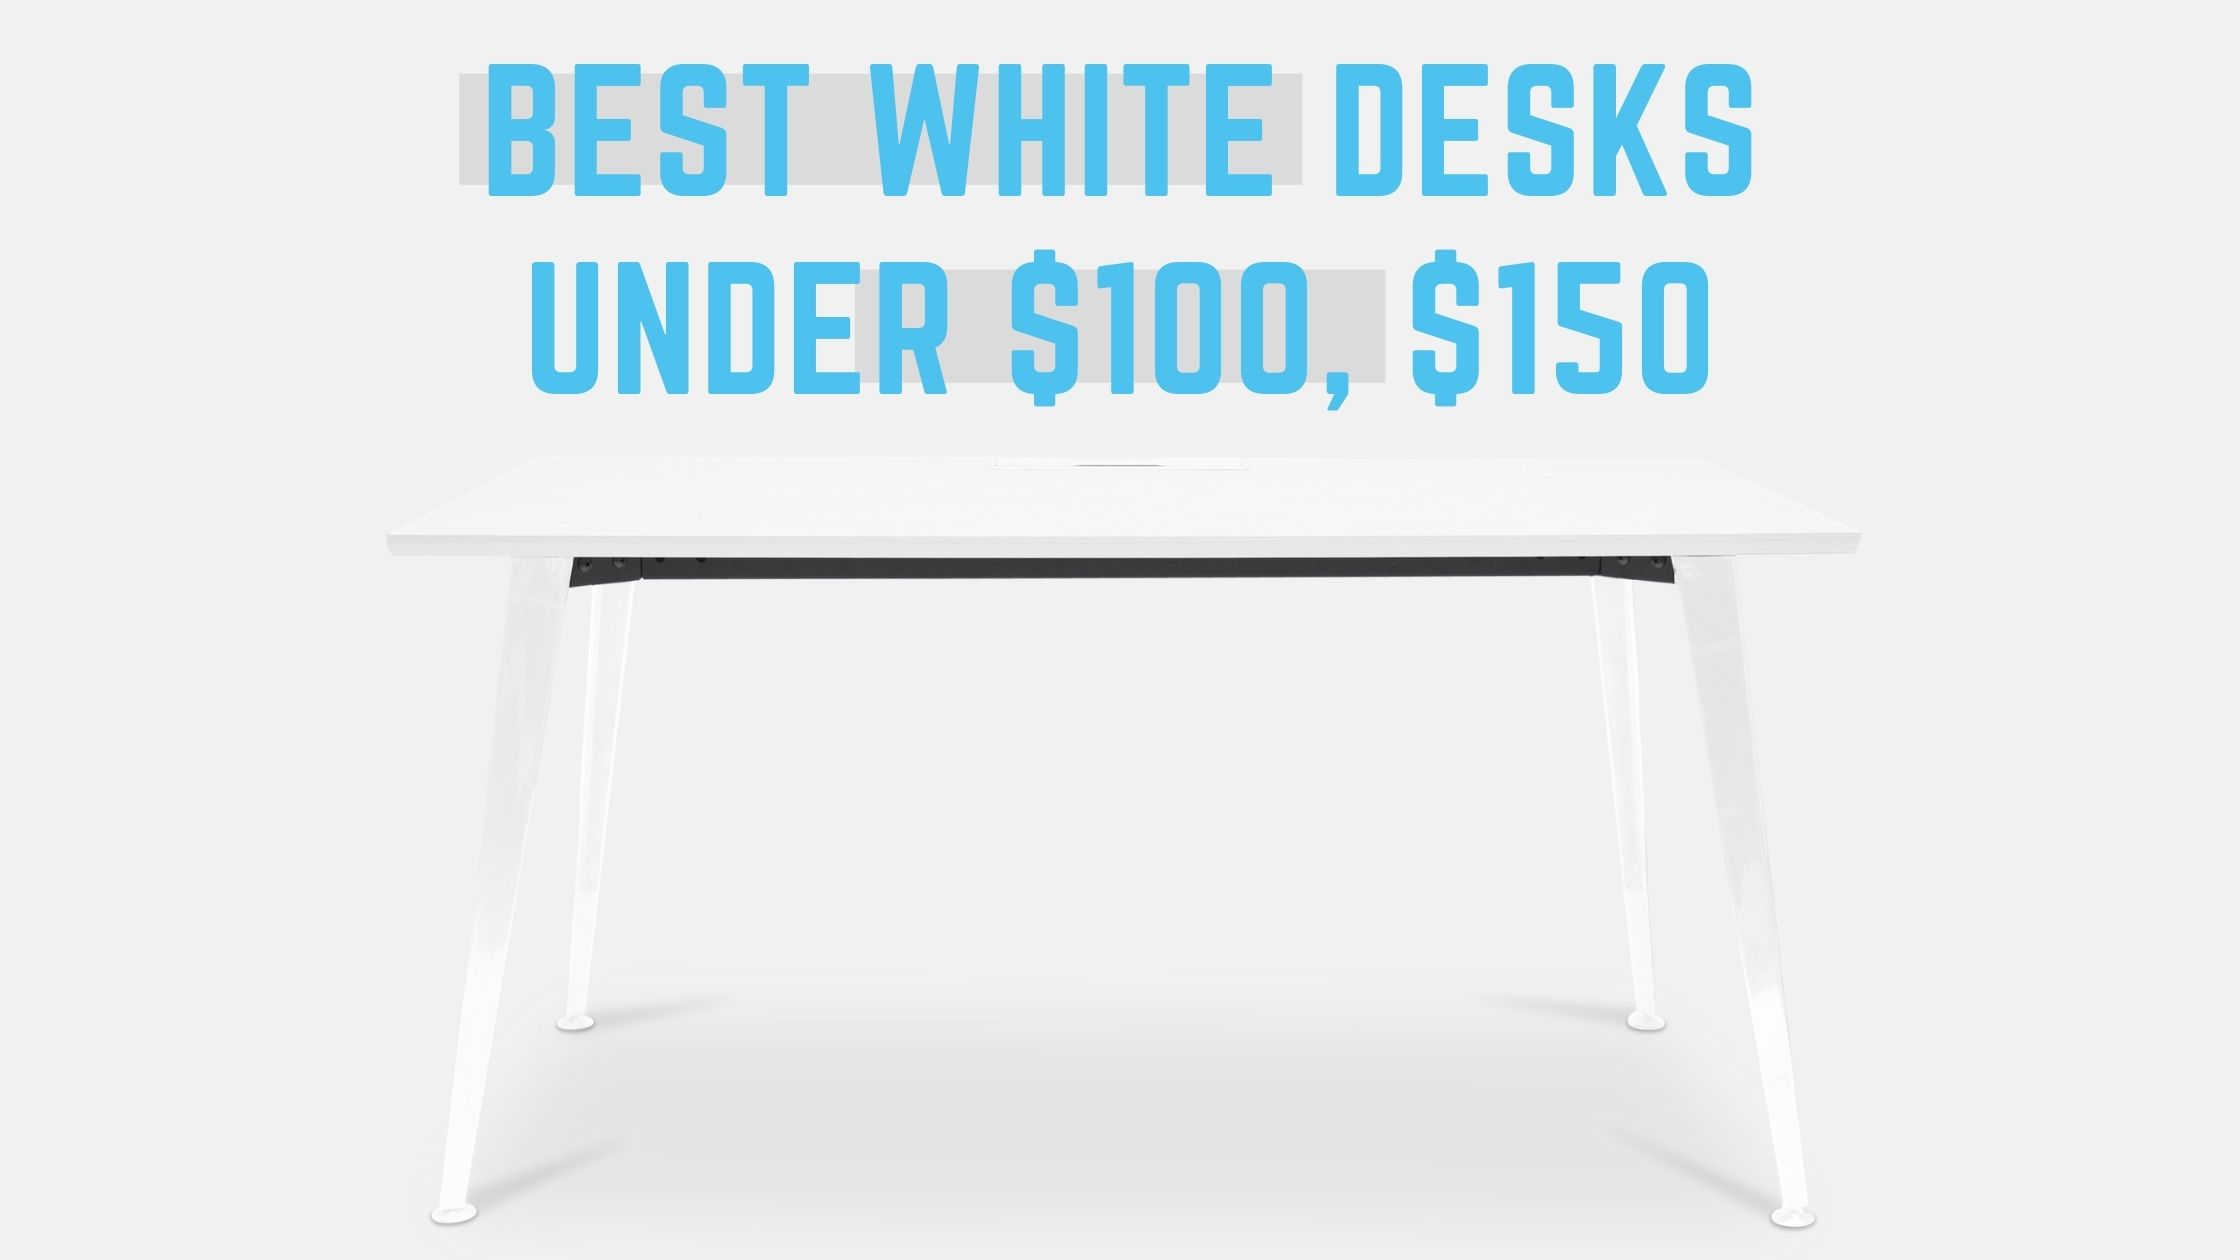 11 Best white desks under $100, $150